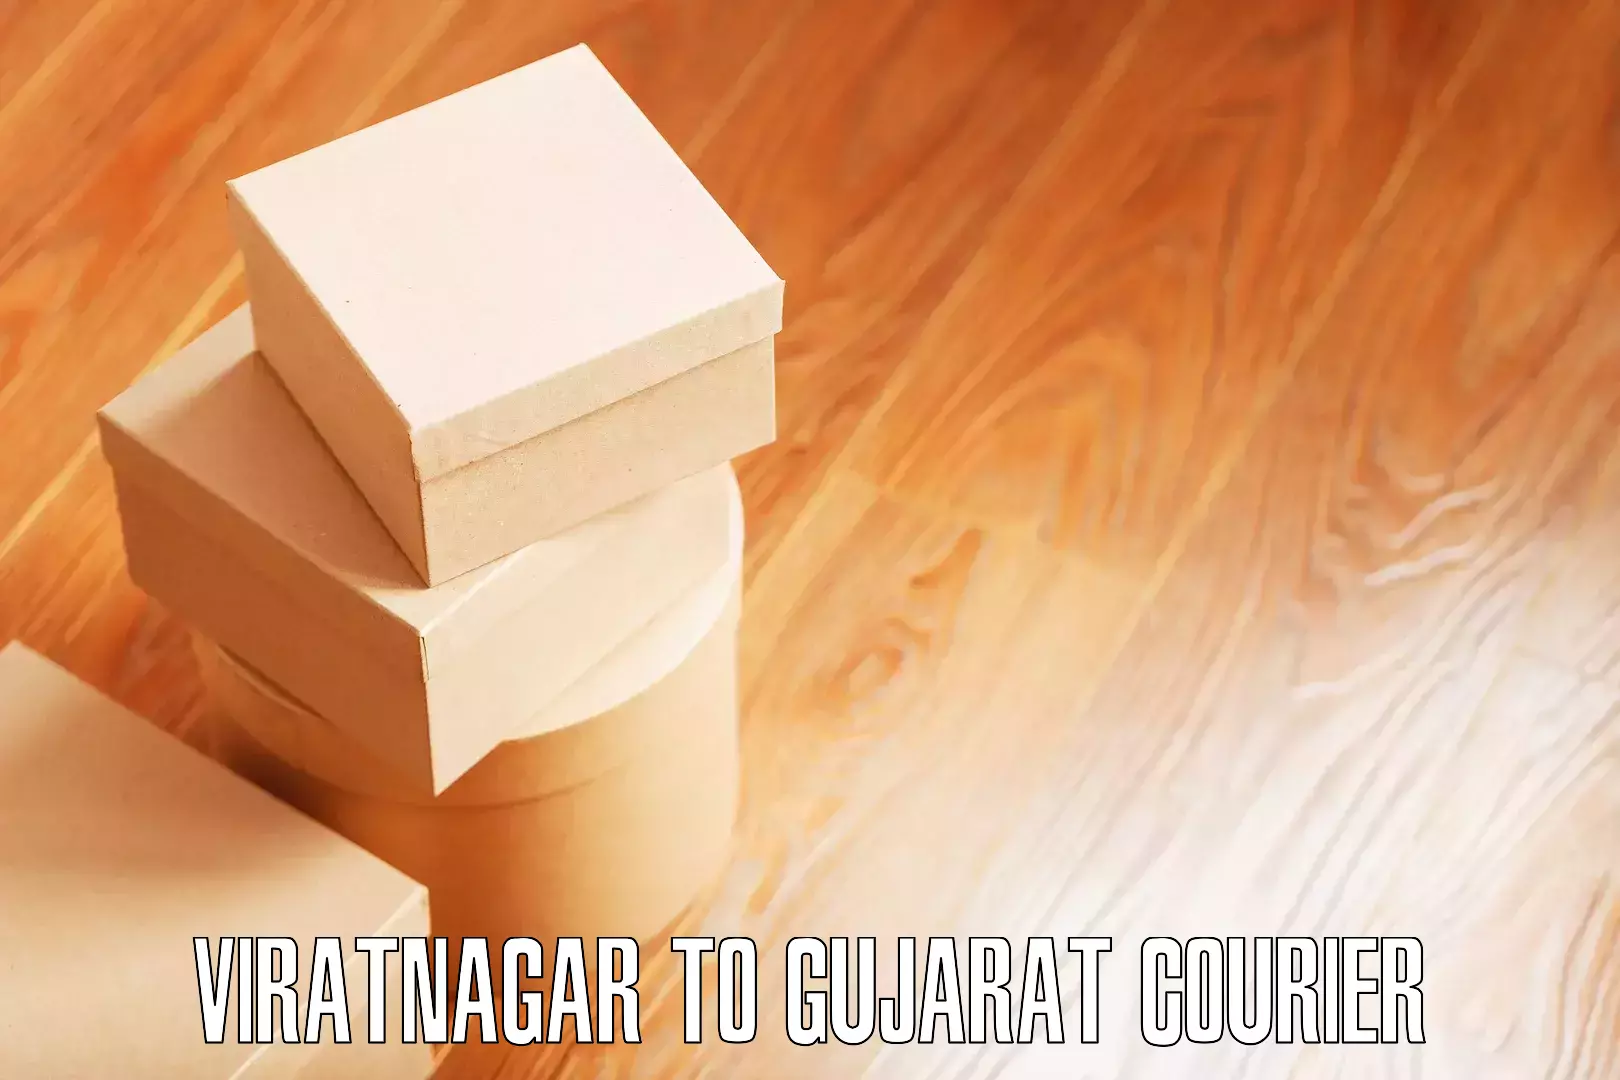 Furniture transport and storage Viratnagar to Dhoraji